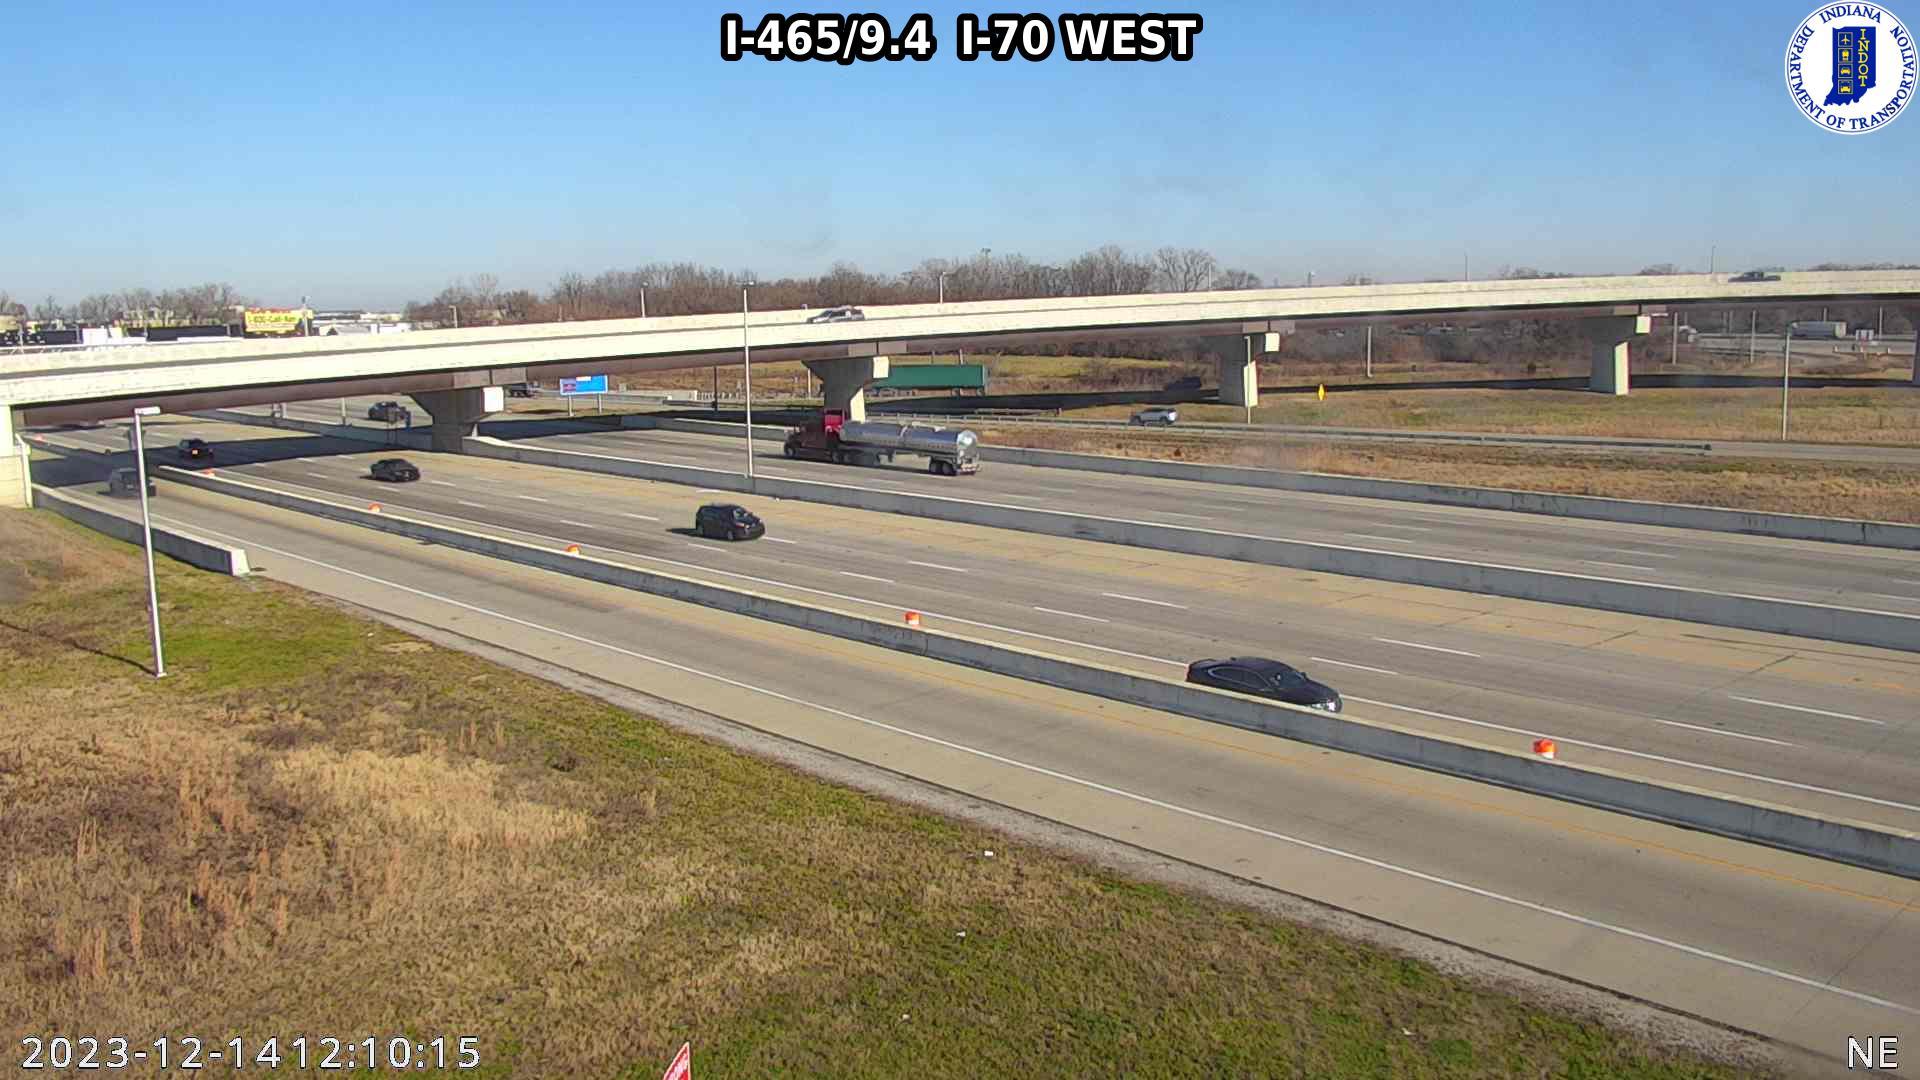 Traffic Cam Indianapolis: I-465: I-465/9.4 I-70 WEST Player